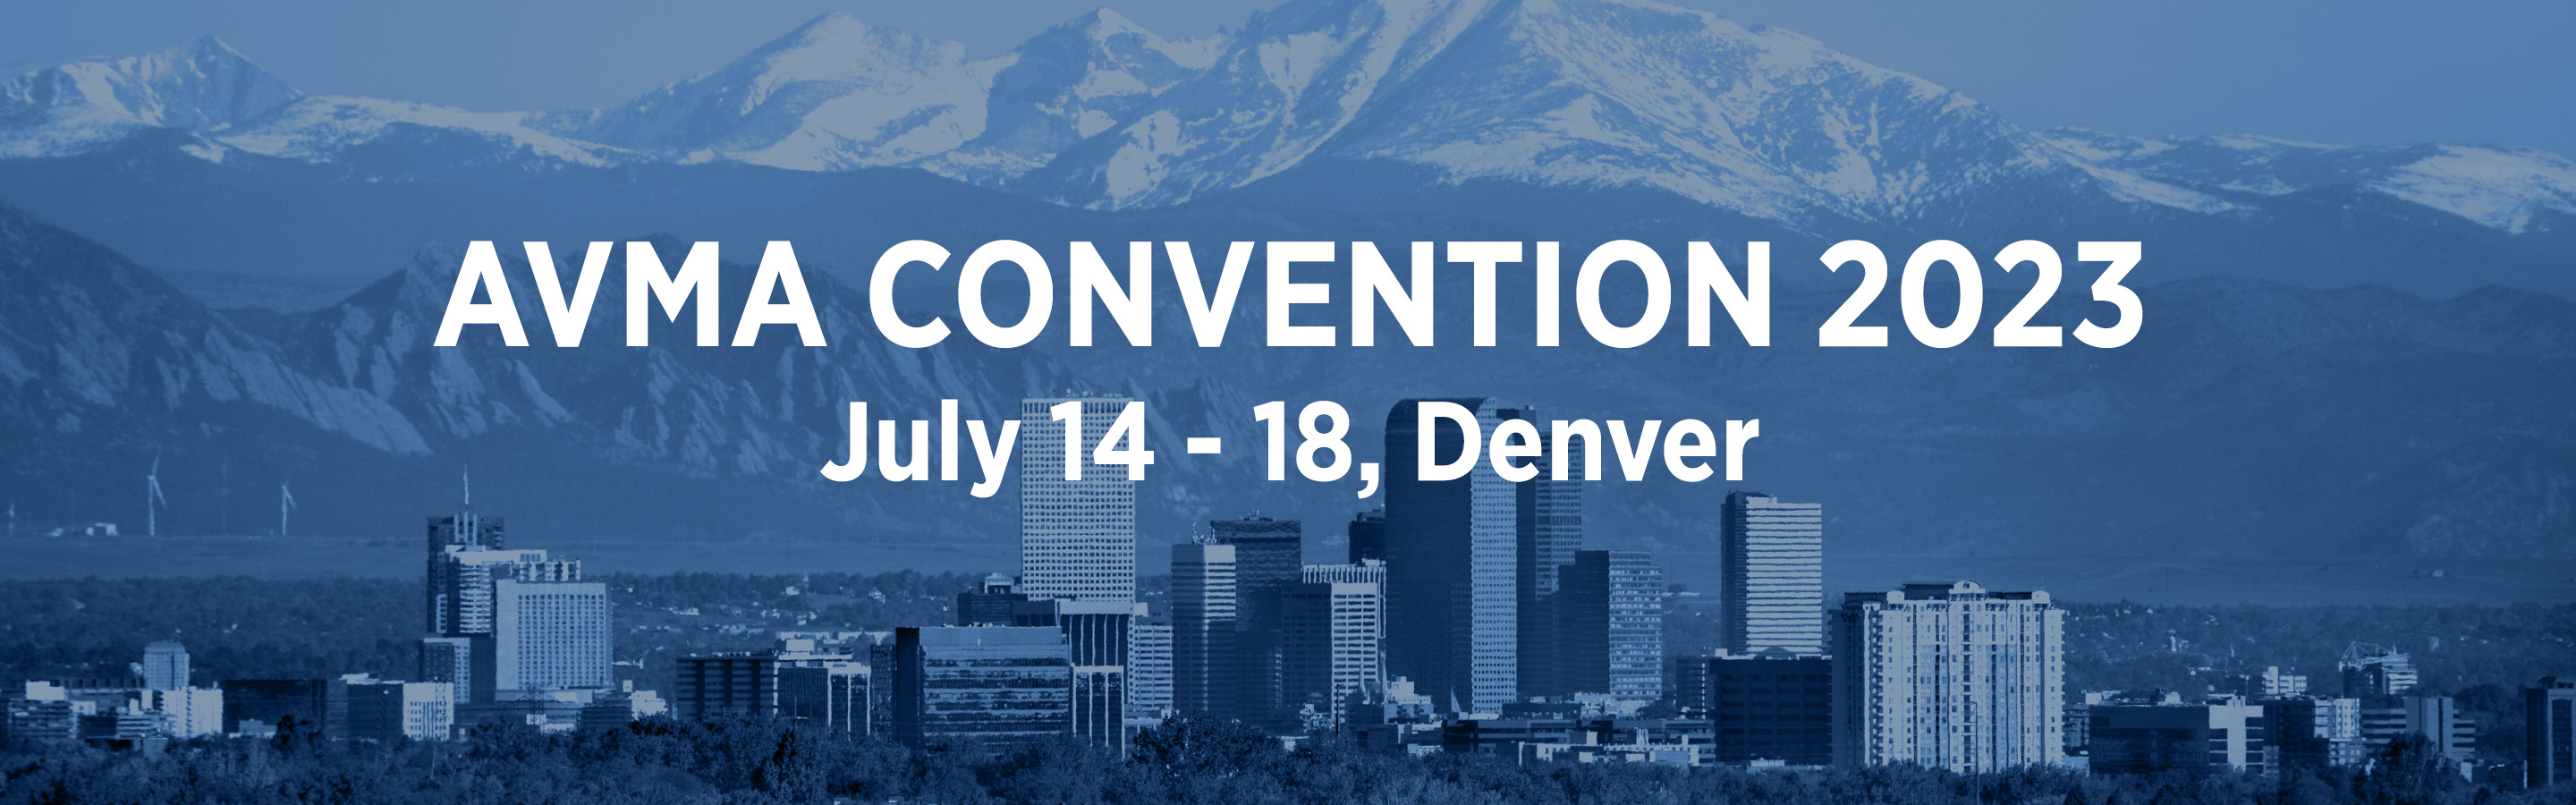 AVMA Convention 2023 - Denver